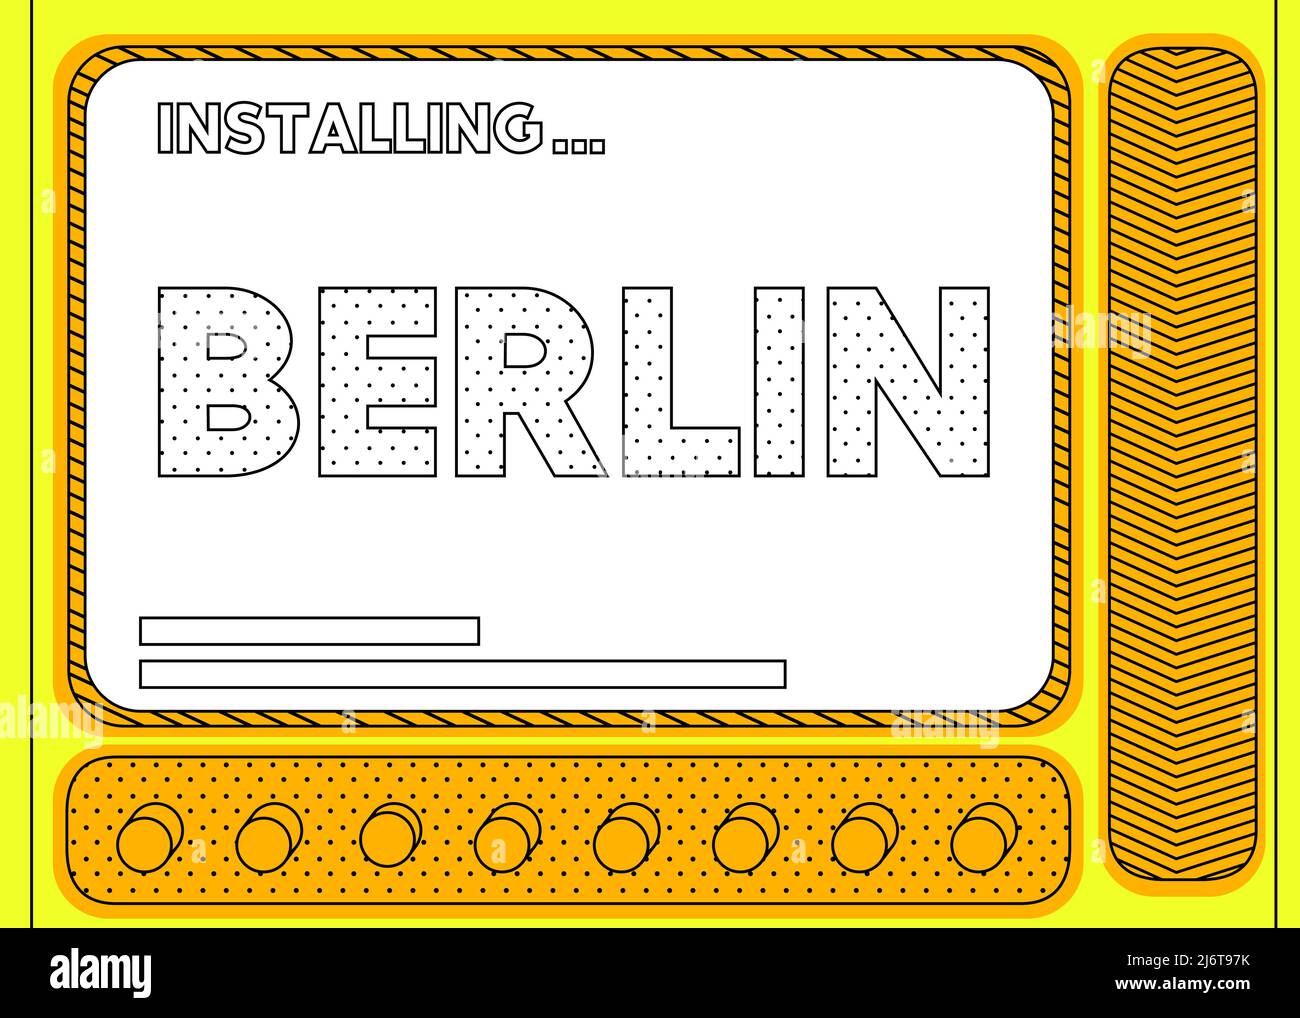 Cartoon Computer mit dem Wort Berlin. Meldung eines Bildschirms mit einem Installationsfenster. Stock Vektor